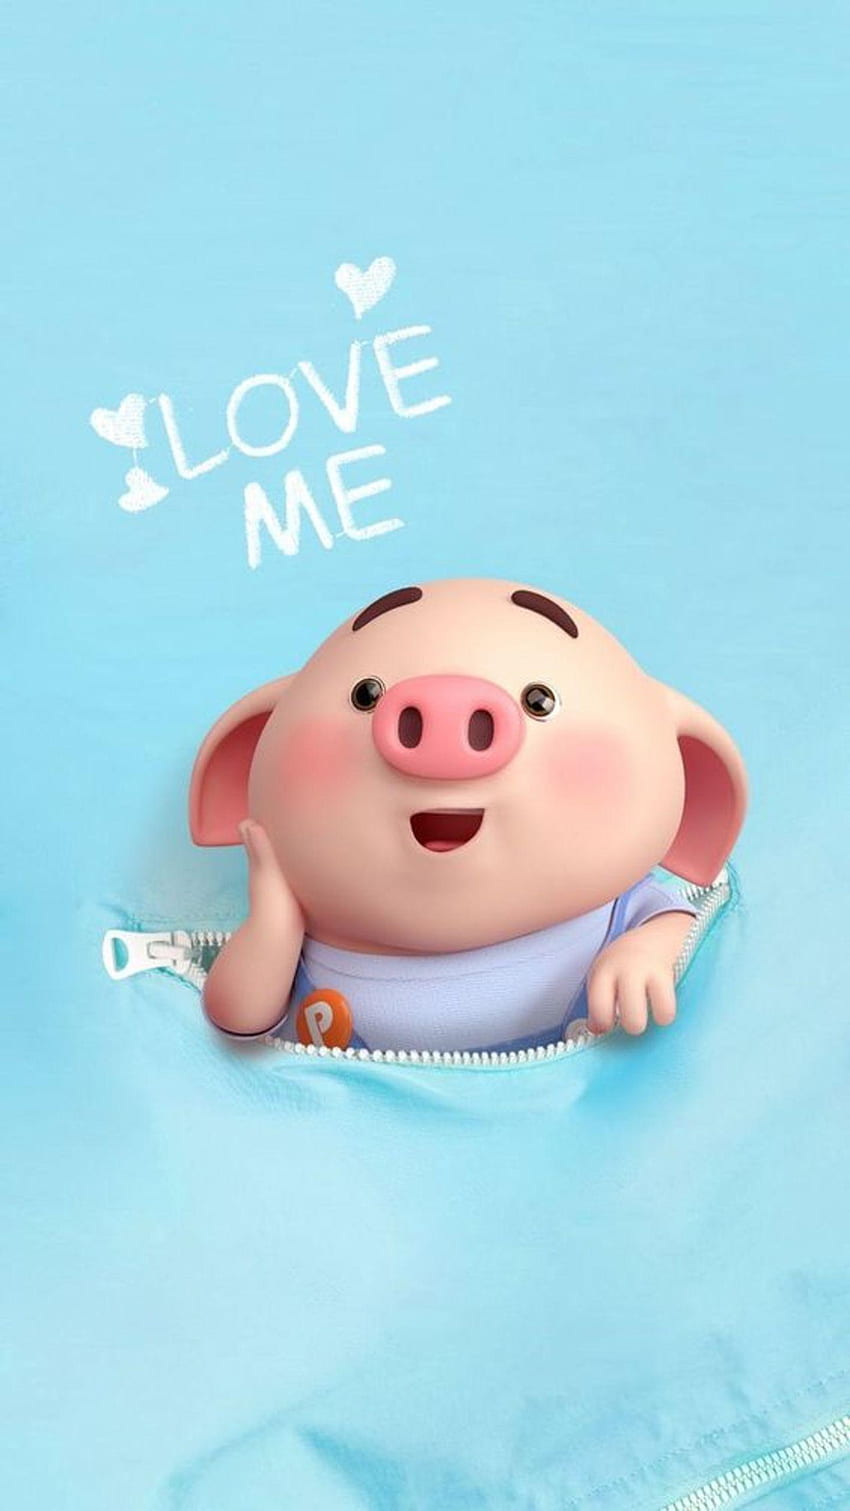 Đừng bỏ lỡ cơ hội thưởng thức những hình ảnh đáng yêu của những chú lợn dễ thương! Chúng sẽ mang đến cho bạn sự vui vẻ và hạnh phúc trong mỗi khoảnh khắc.